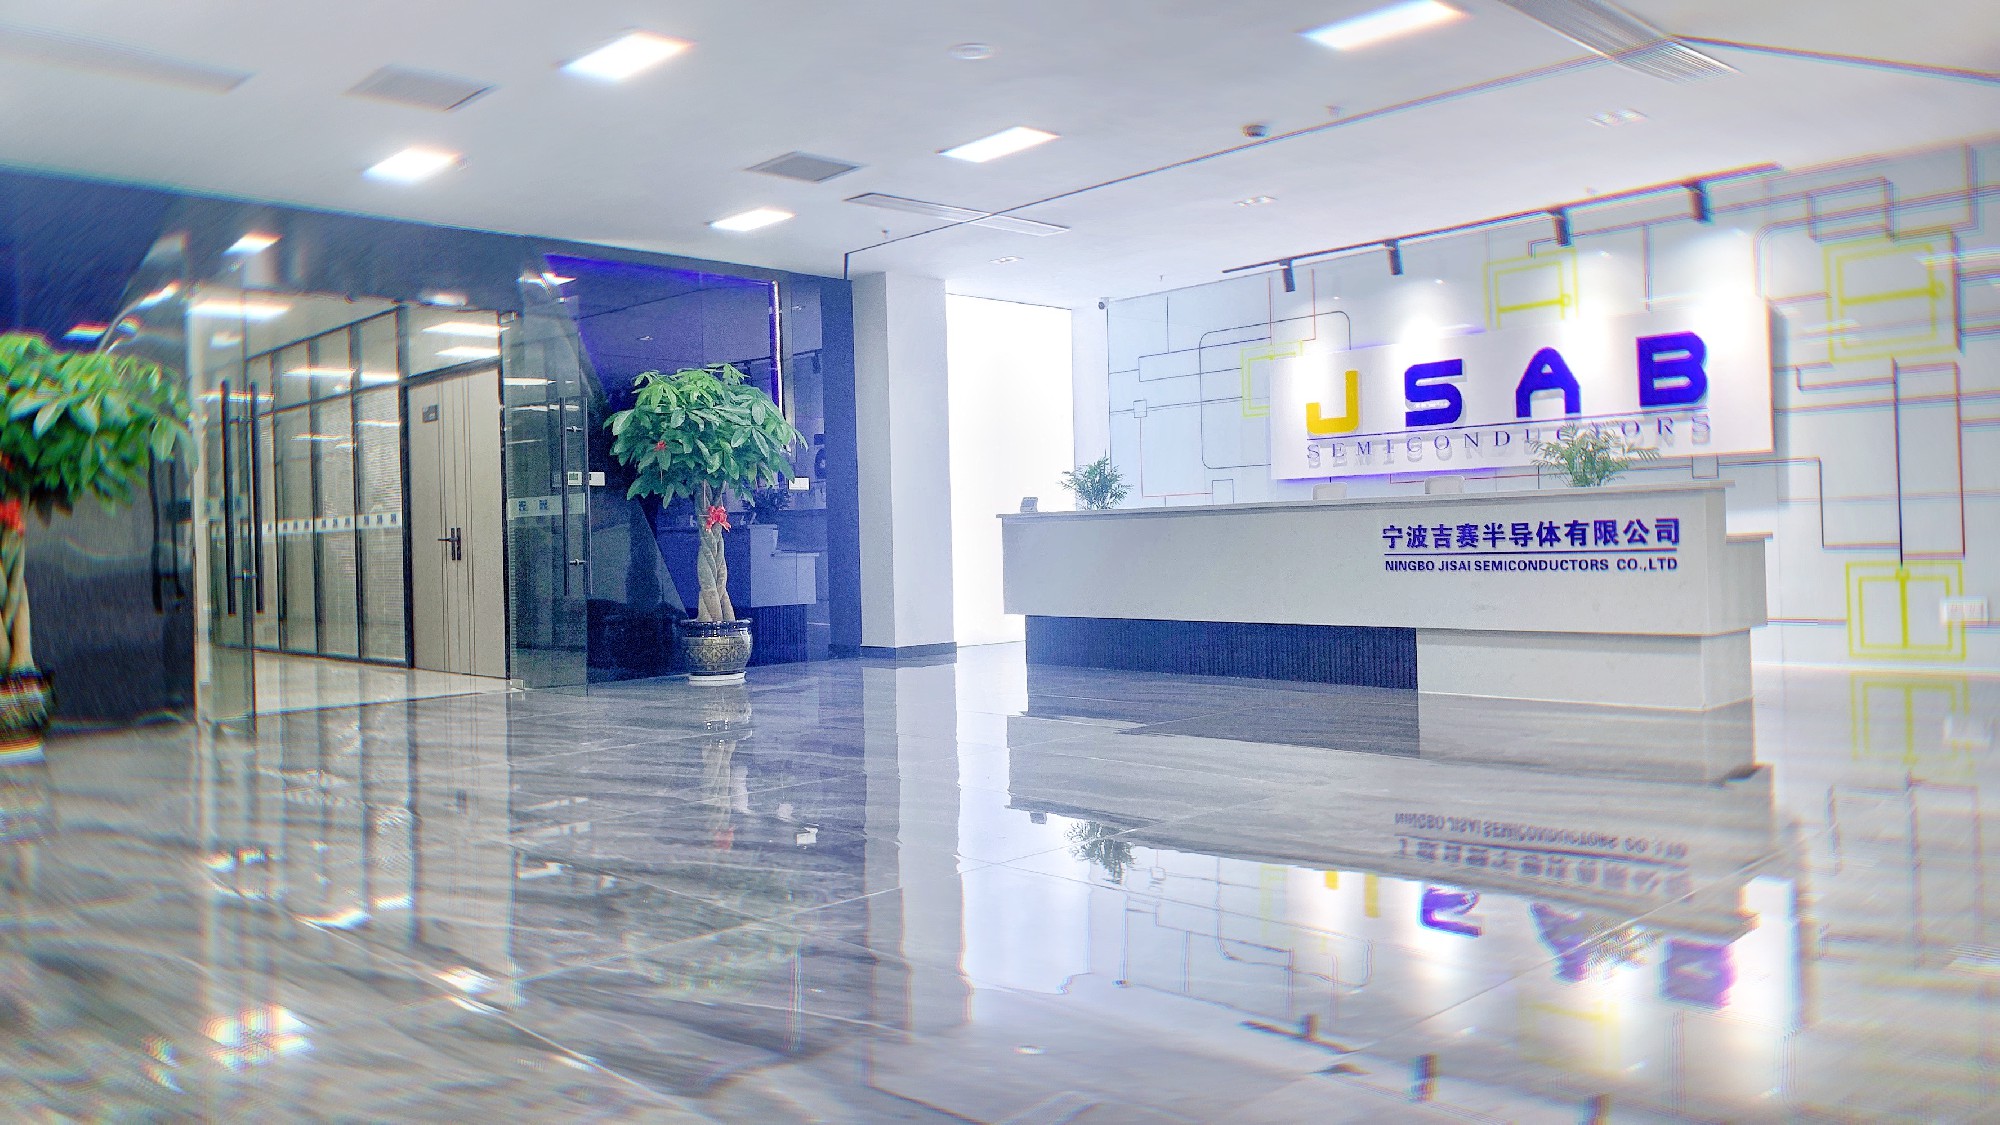 Ningbo Jisai Semiconductors Ltd.